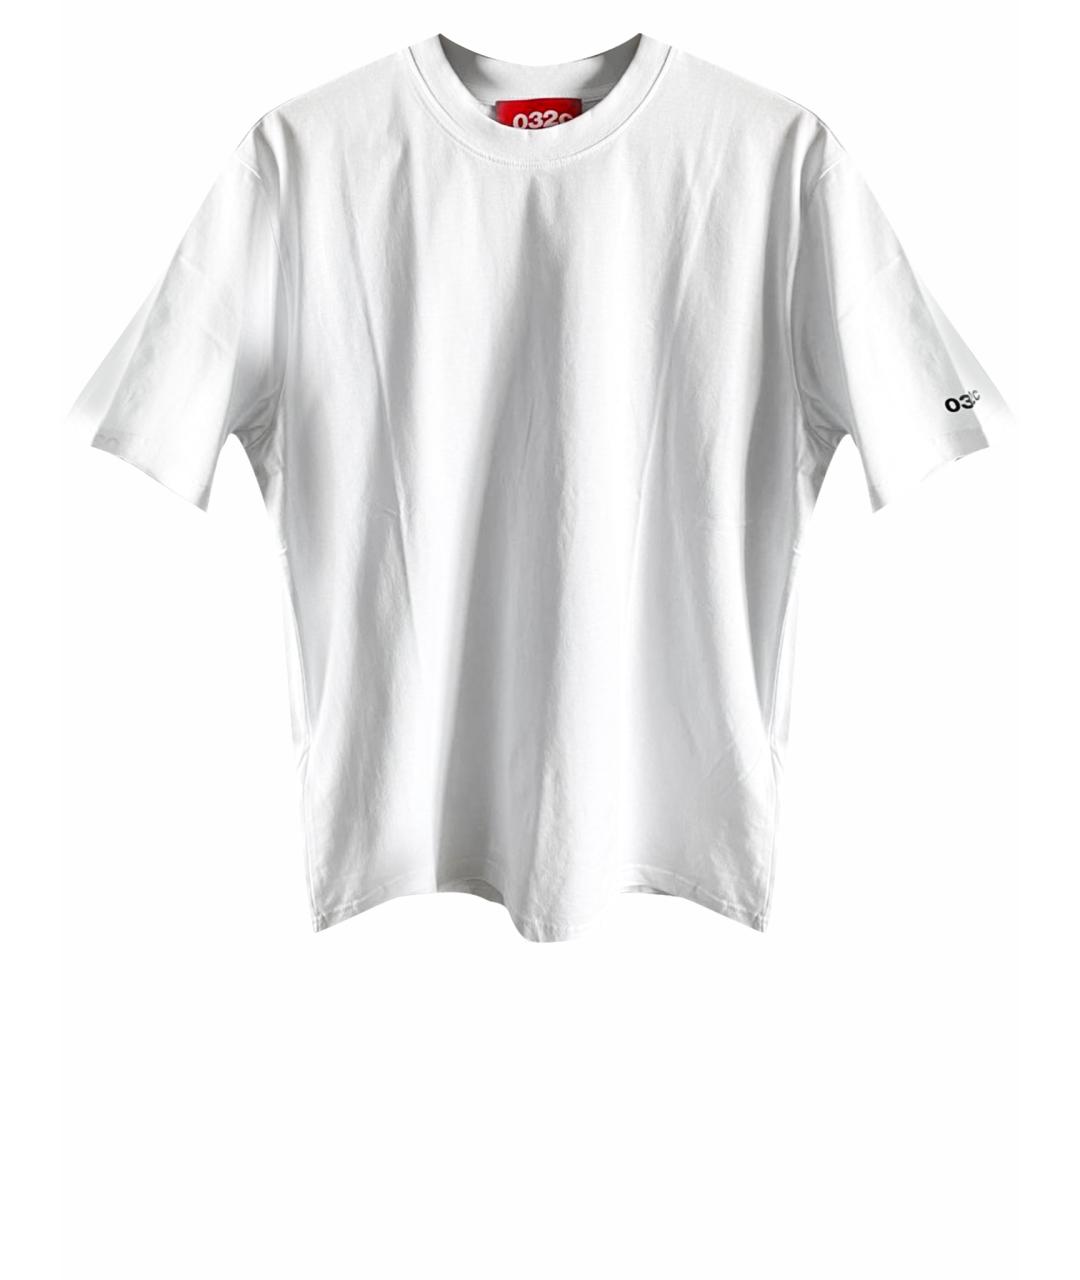 032C Белая хлопковая футболка, фото 1